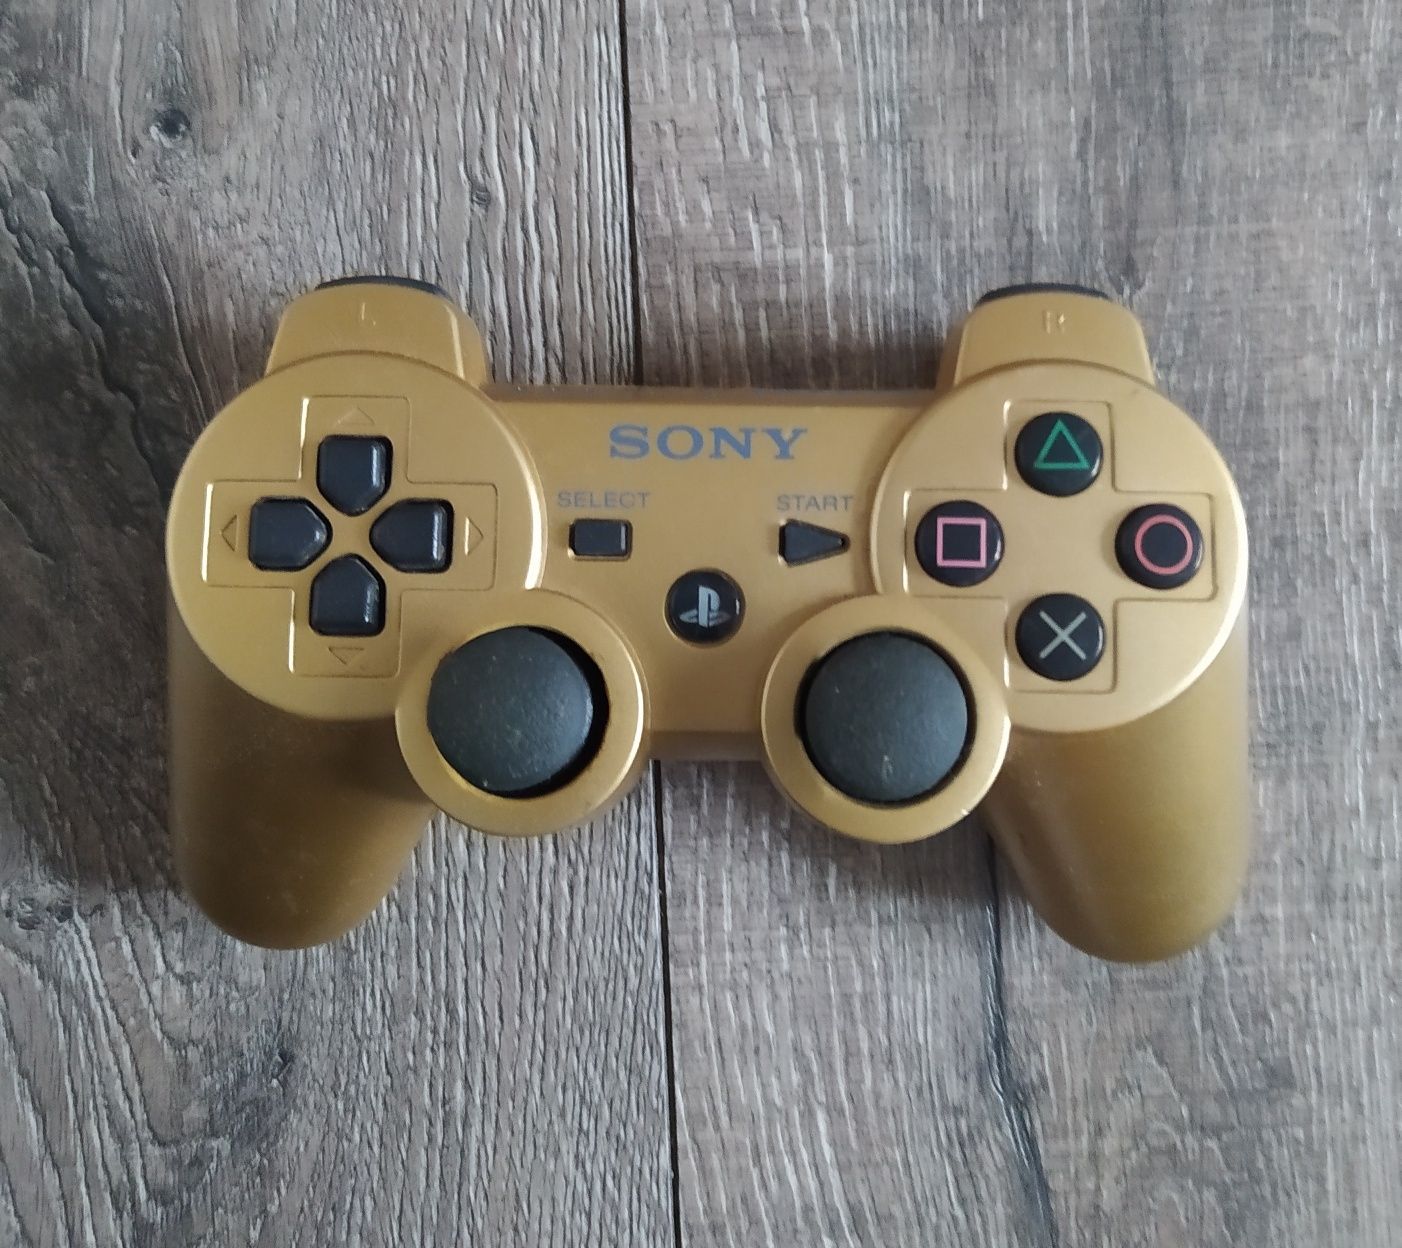 Pad PS3 Sony Oryginalny złoty Wysyłka